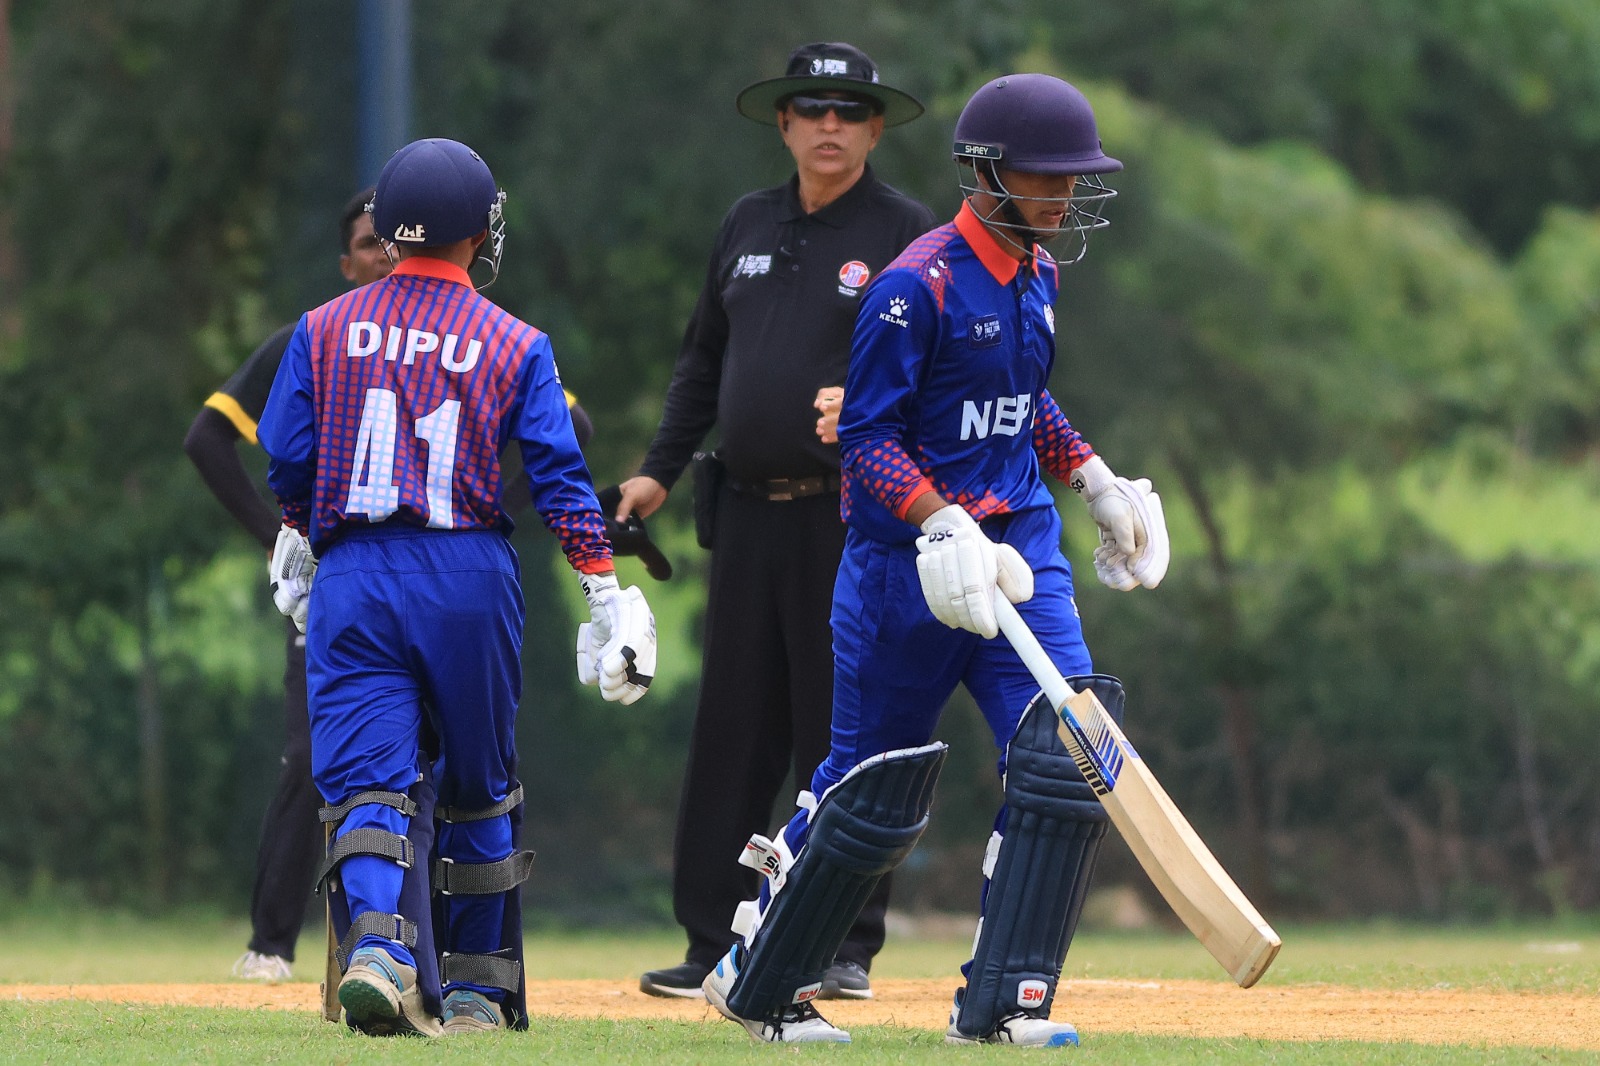 尼泊尔 U-16 队以 84 分击败马来西亚 U-16 队